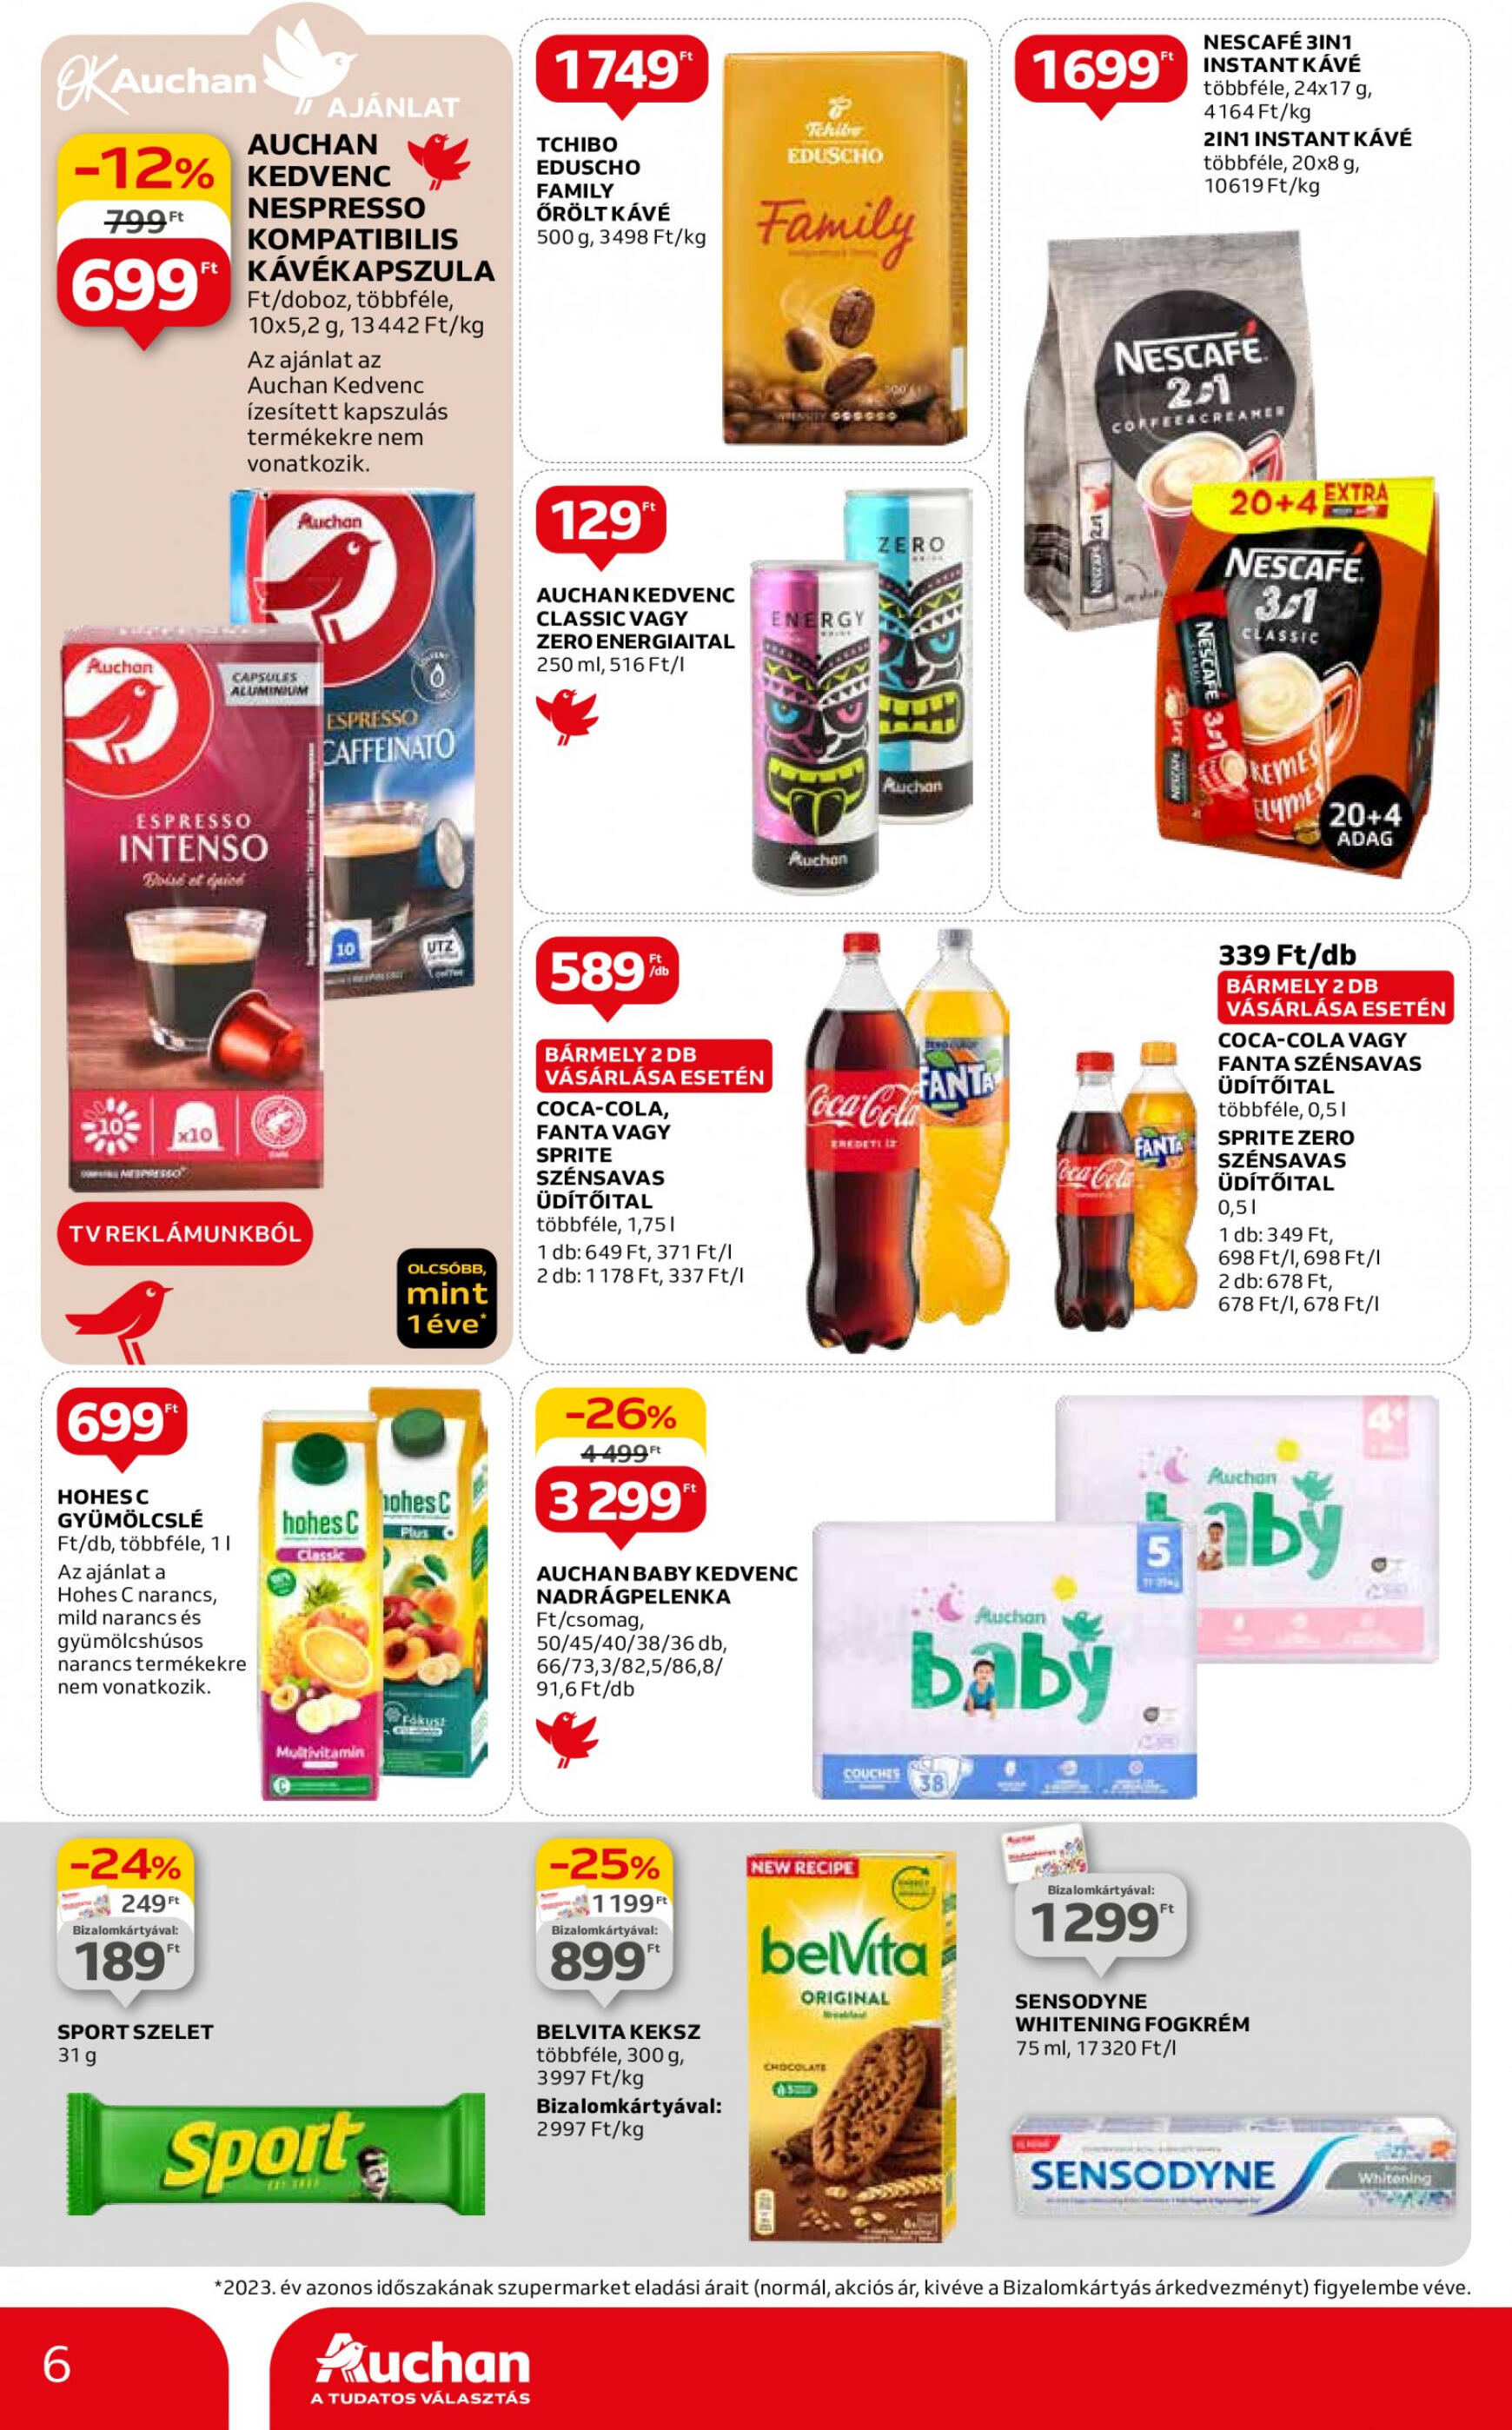 auchan - Aktuális újság Auchan szupermarket 04.18. - 04.24. - page: 6